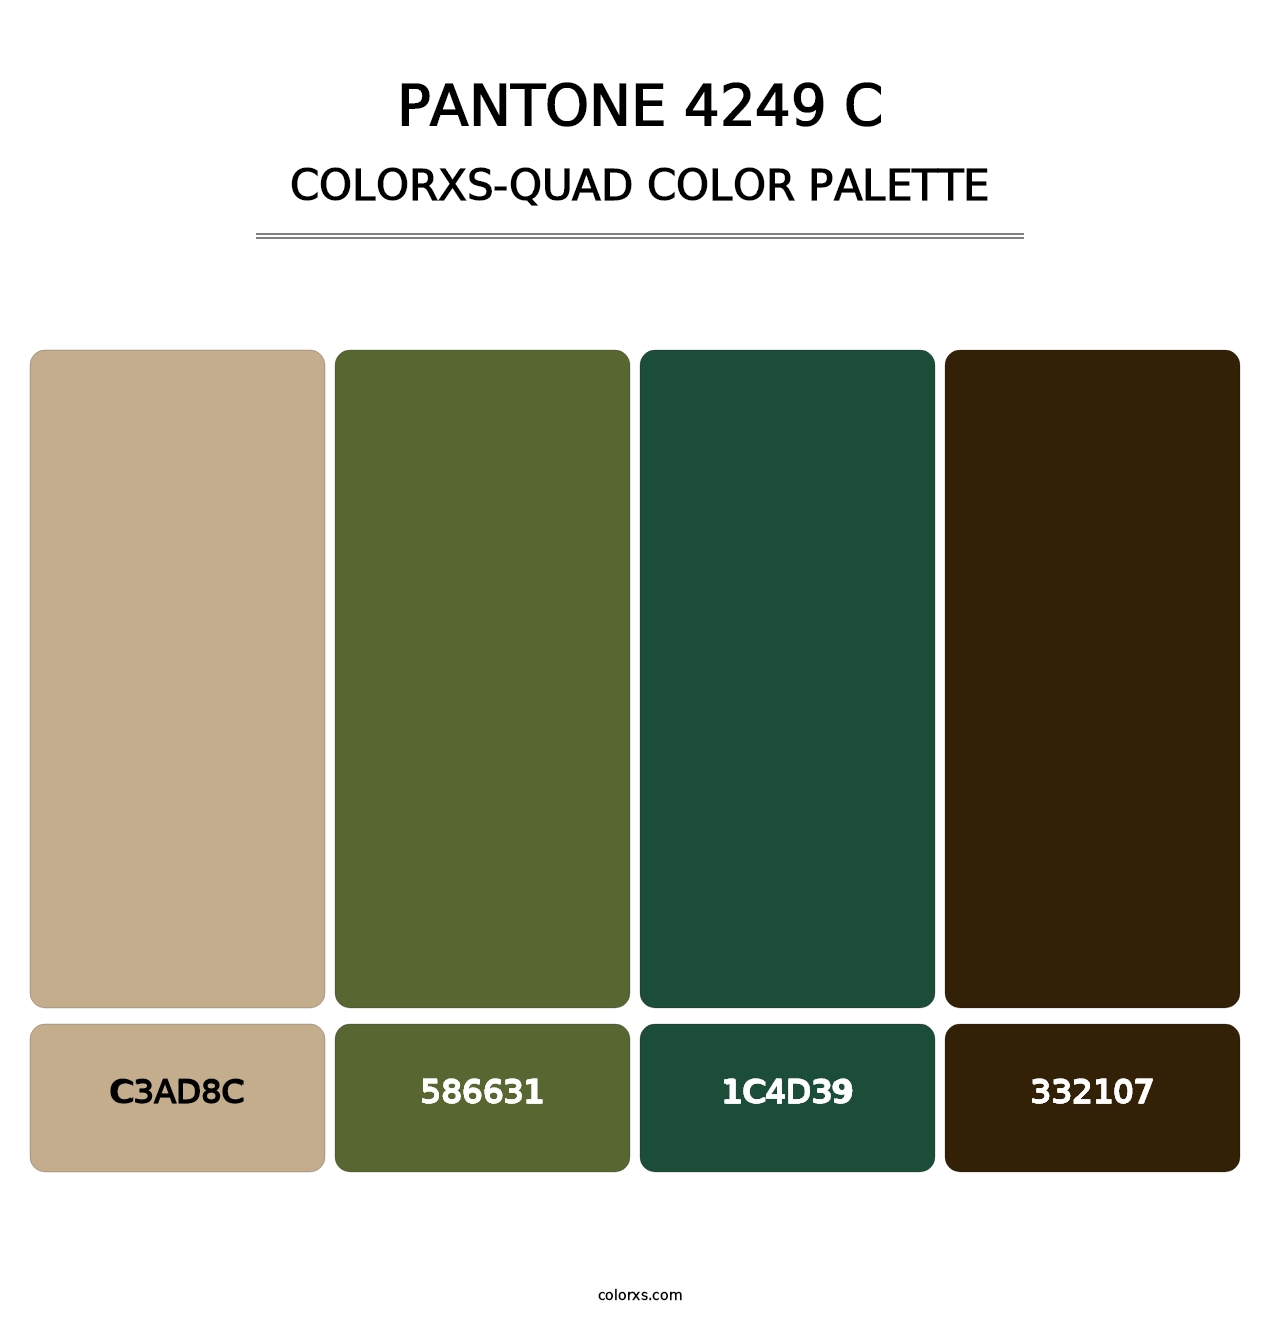 PANTONE 4249 C - Colorxs Quad Palette